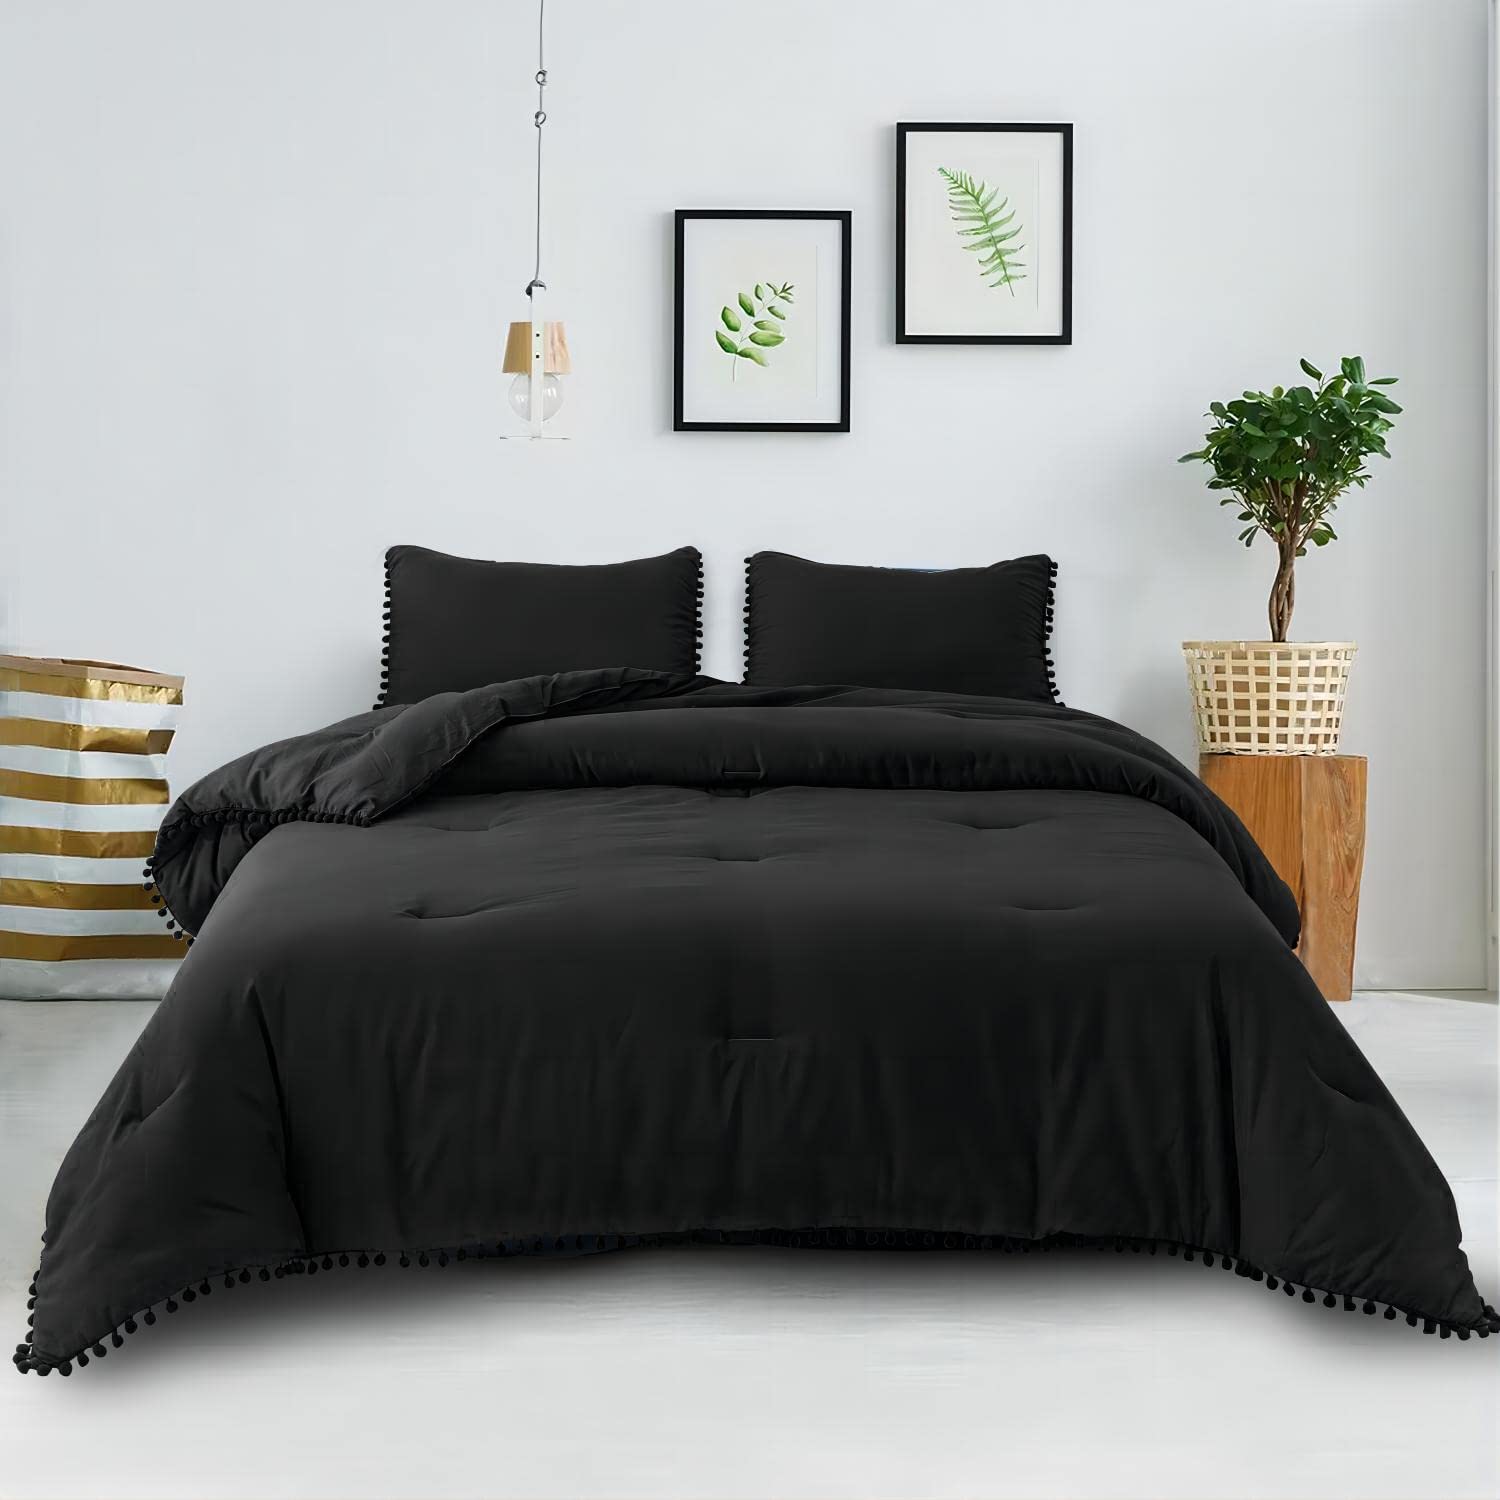 Shatex 7 Piece Bed-in-A-Bag Comforter Bedding Set-Pompom Fringe Bedding Comforter Set, Ultra Soft Polyester Furball Bedding Comforters